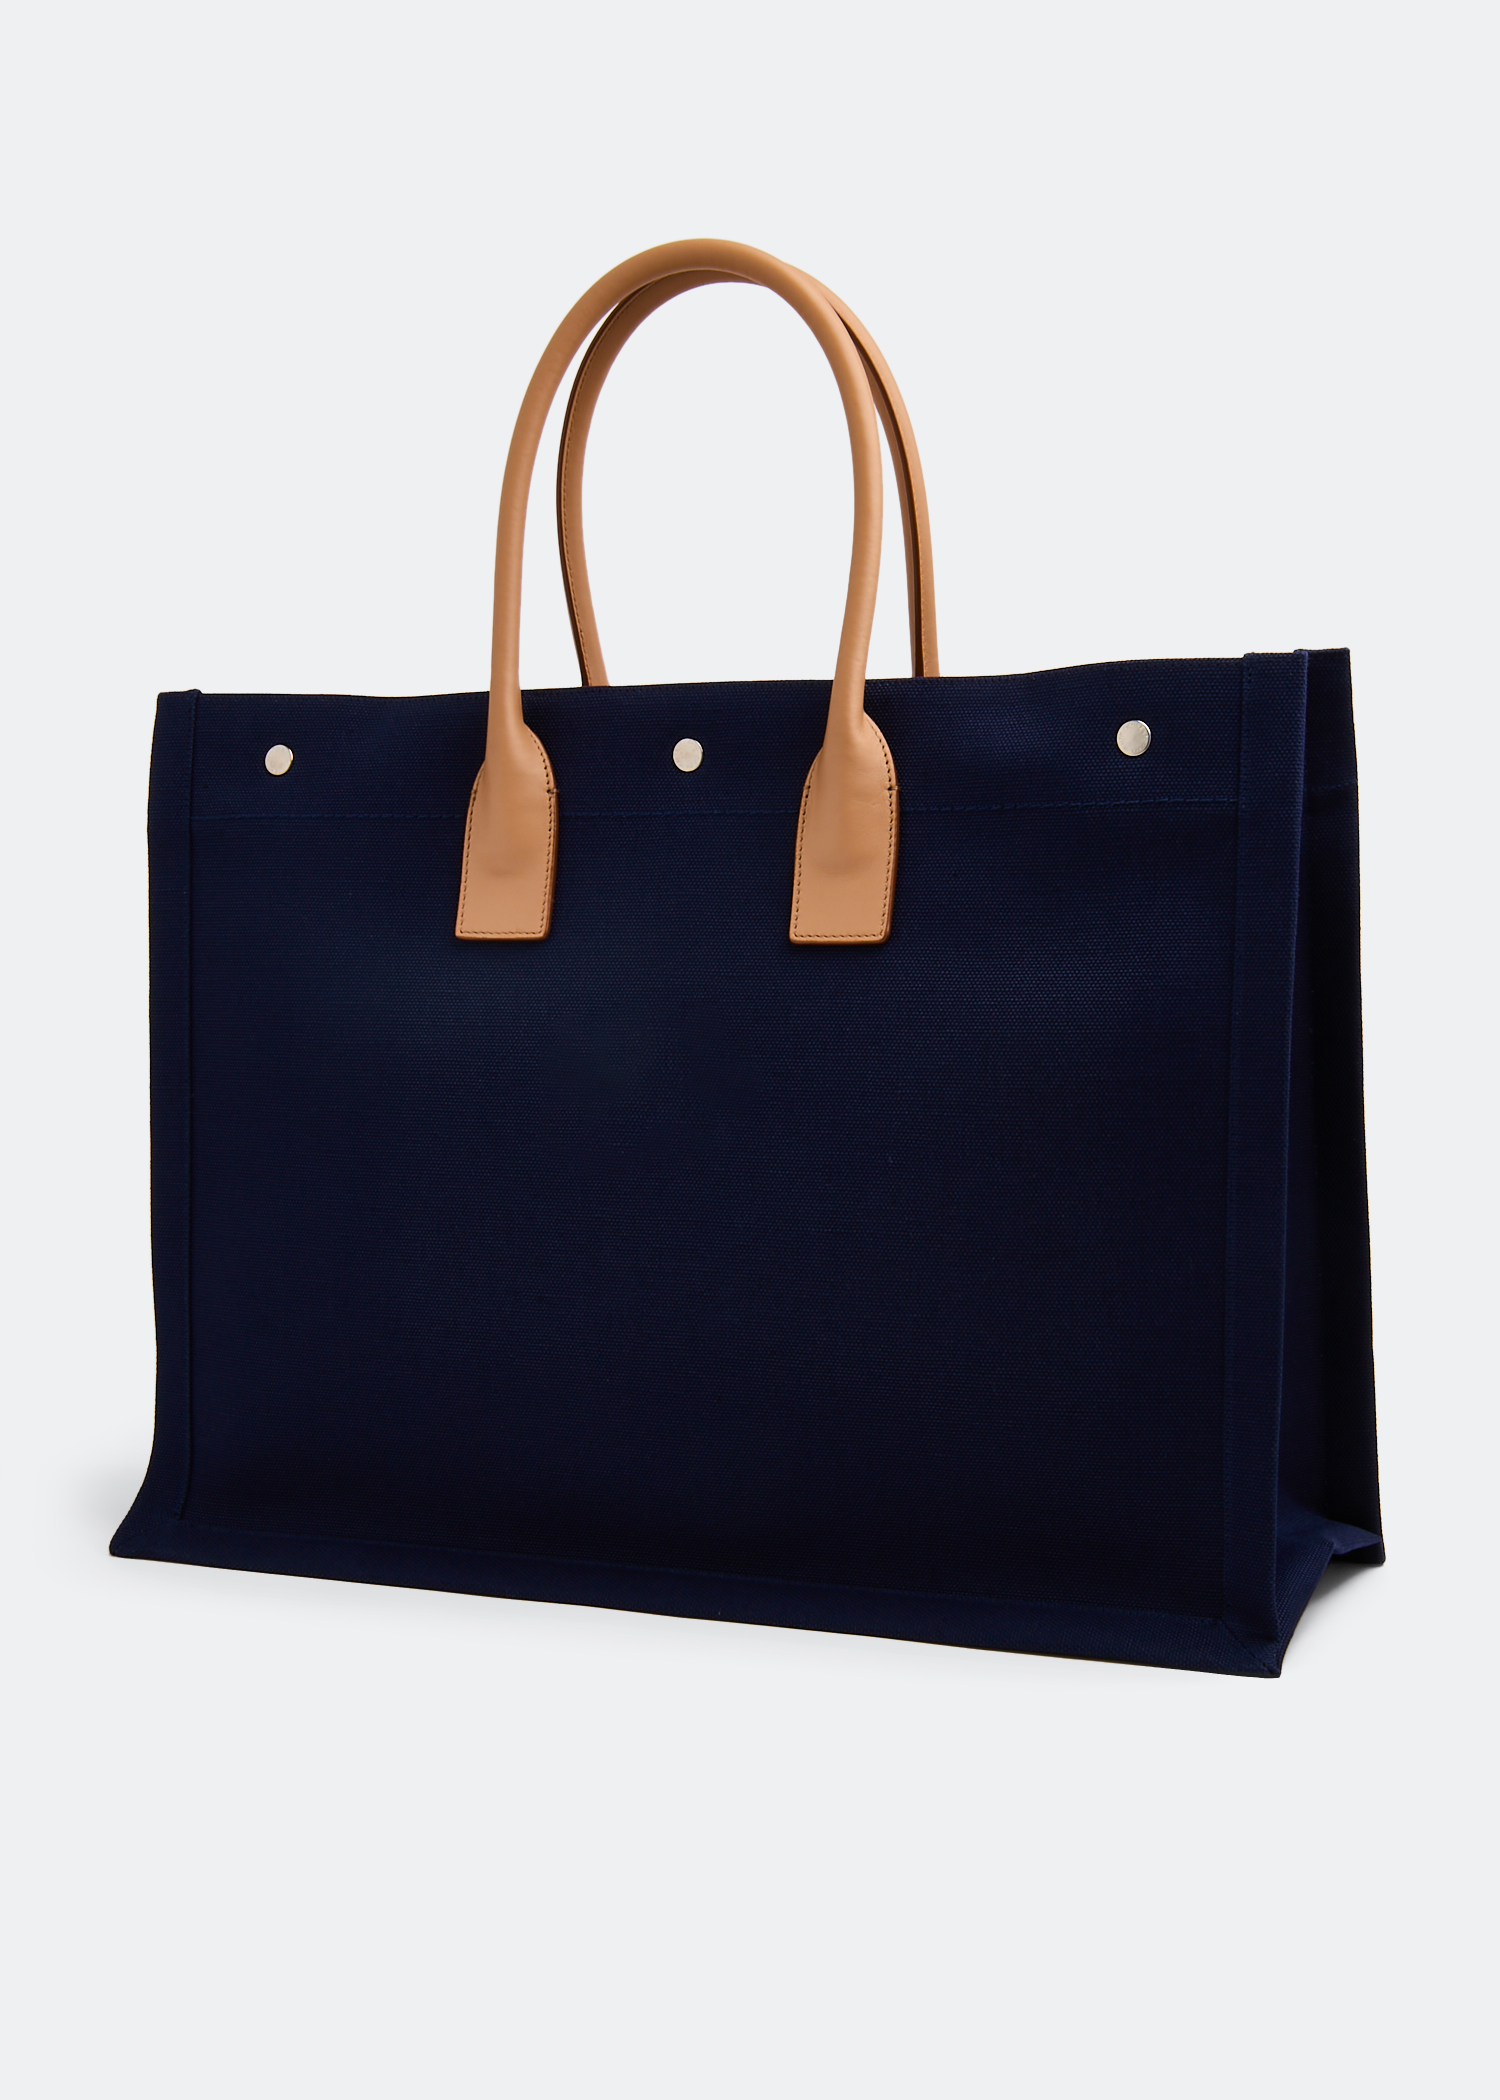 Saint Laurent Leather Medium Rive Gauche Bag Blue